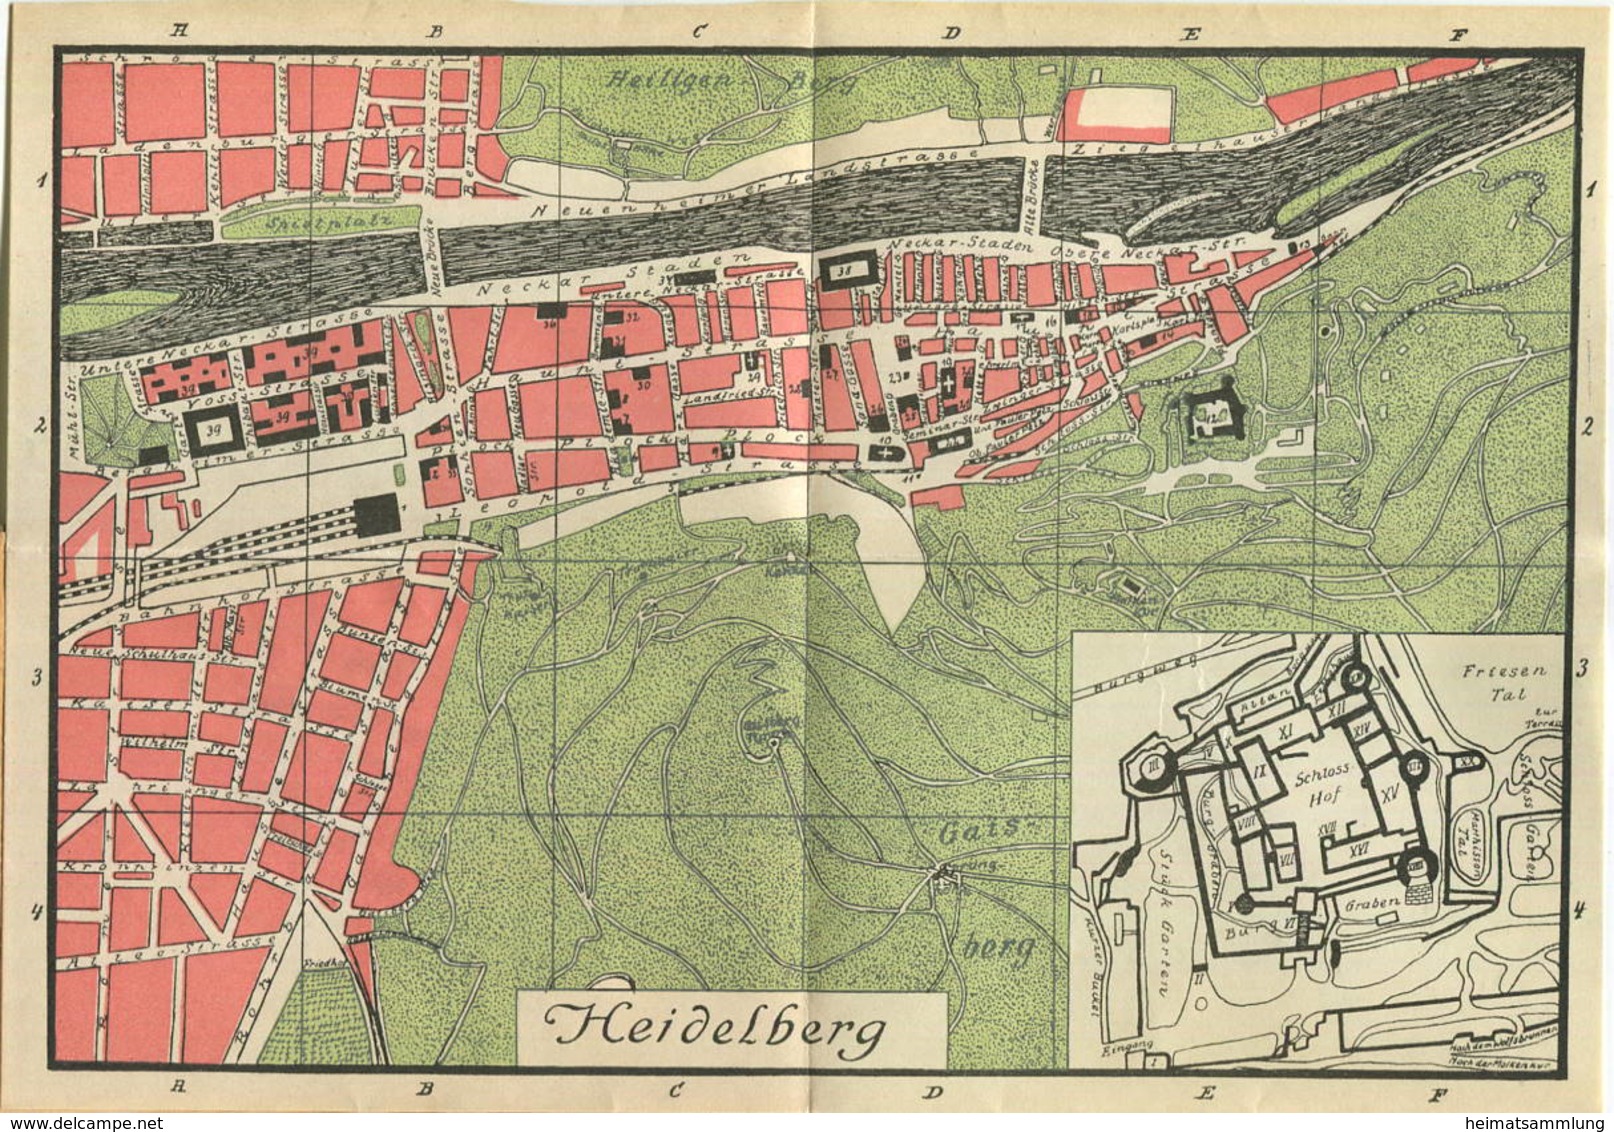 Miniatur-Bibliothek Nr. 929 - Reiseführer Heidelberg Mit Einem Plan - 8cm X 12cm - 48 Seiten Ca. 1910 - Verlag Für Kunst - Other & Unclassified